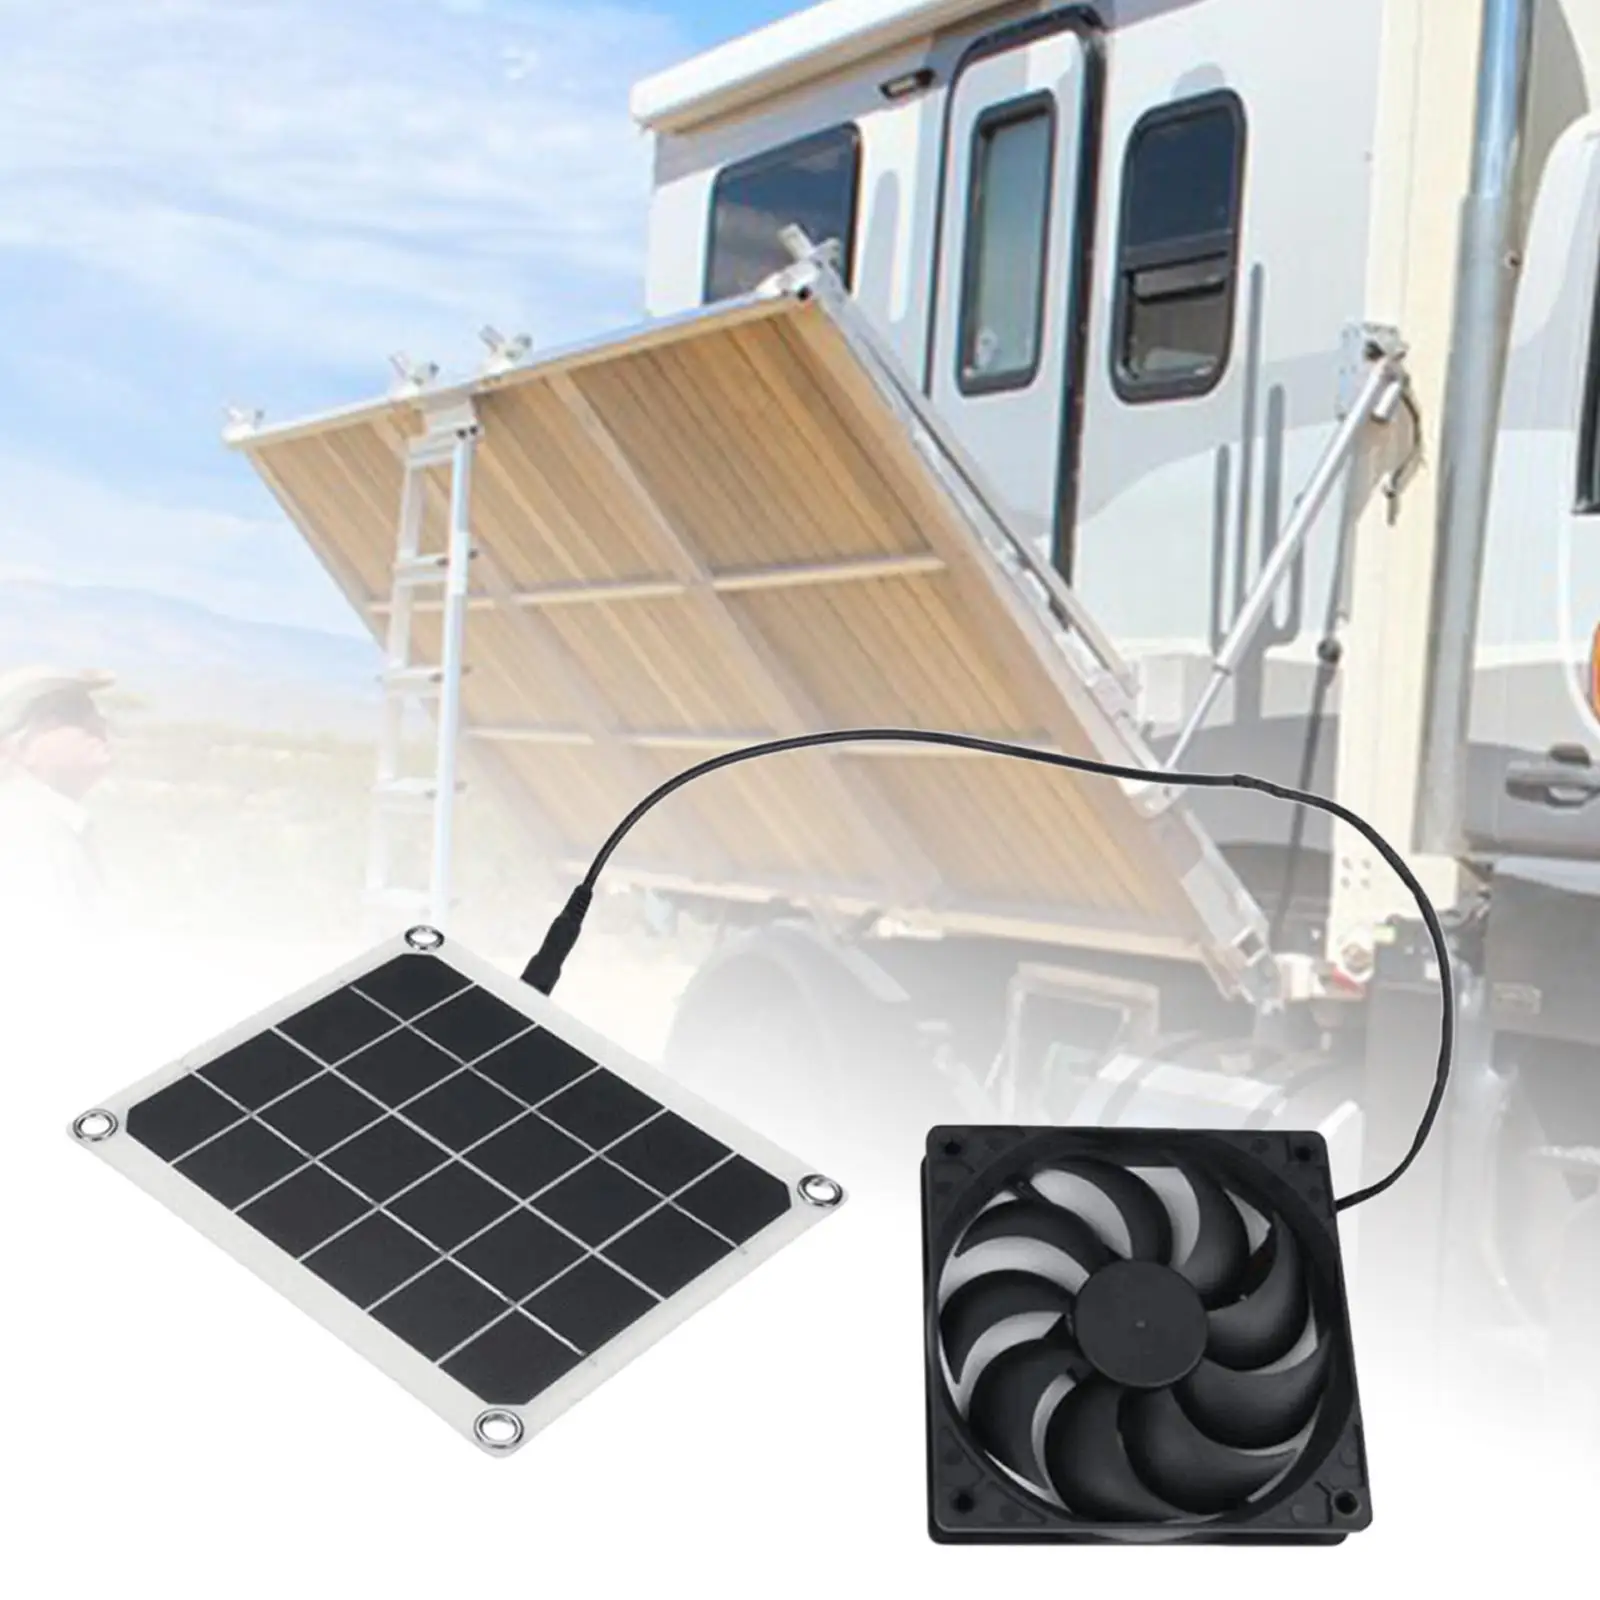 10W Solar Powered Panel Fan Cooling Ventilation Fan for Chicken